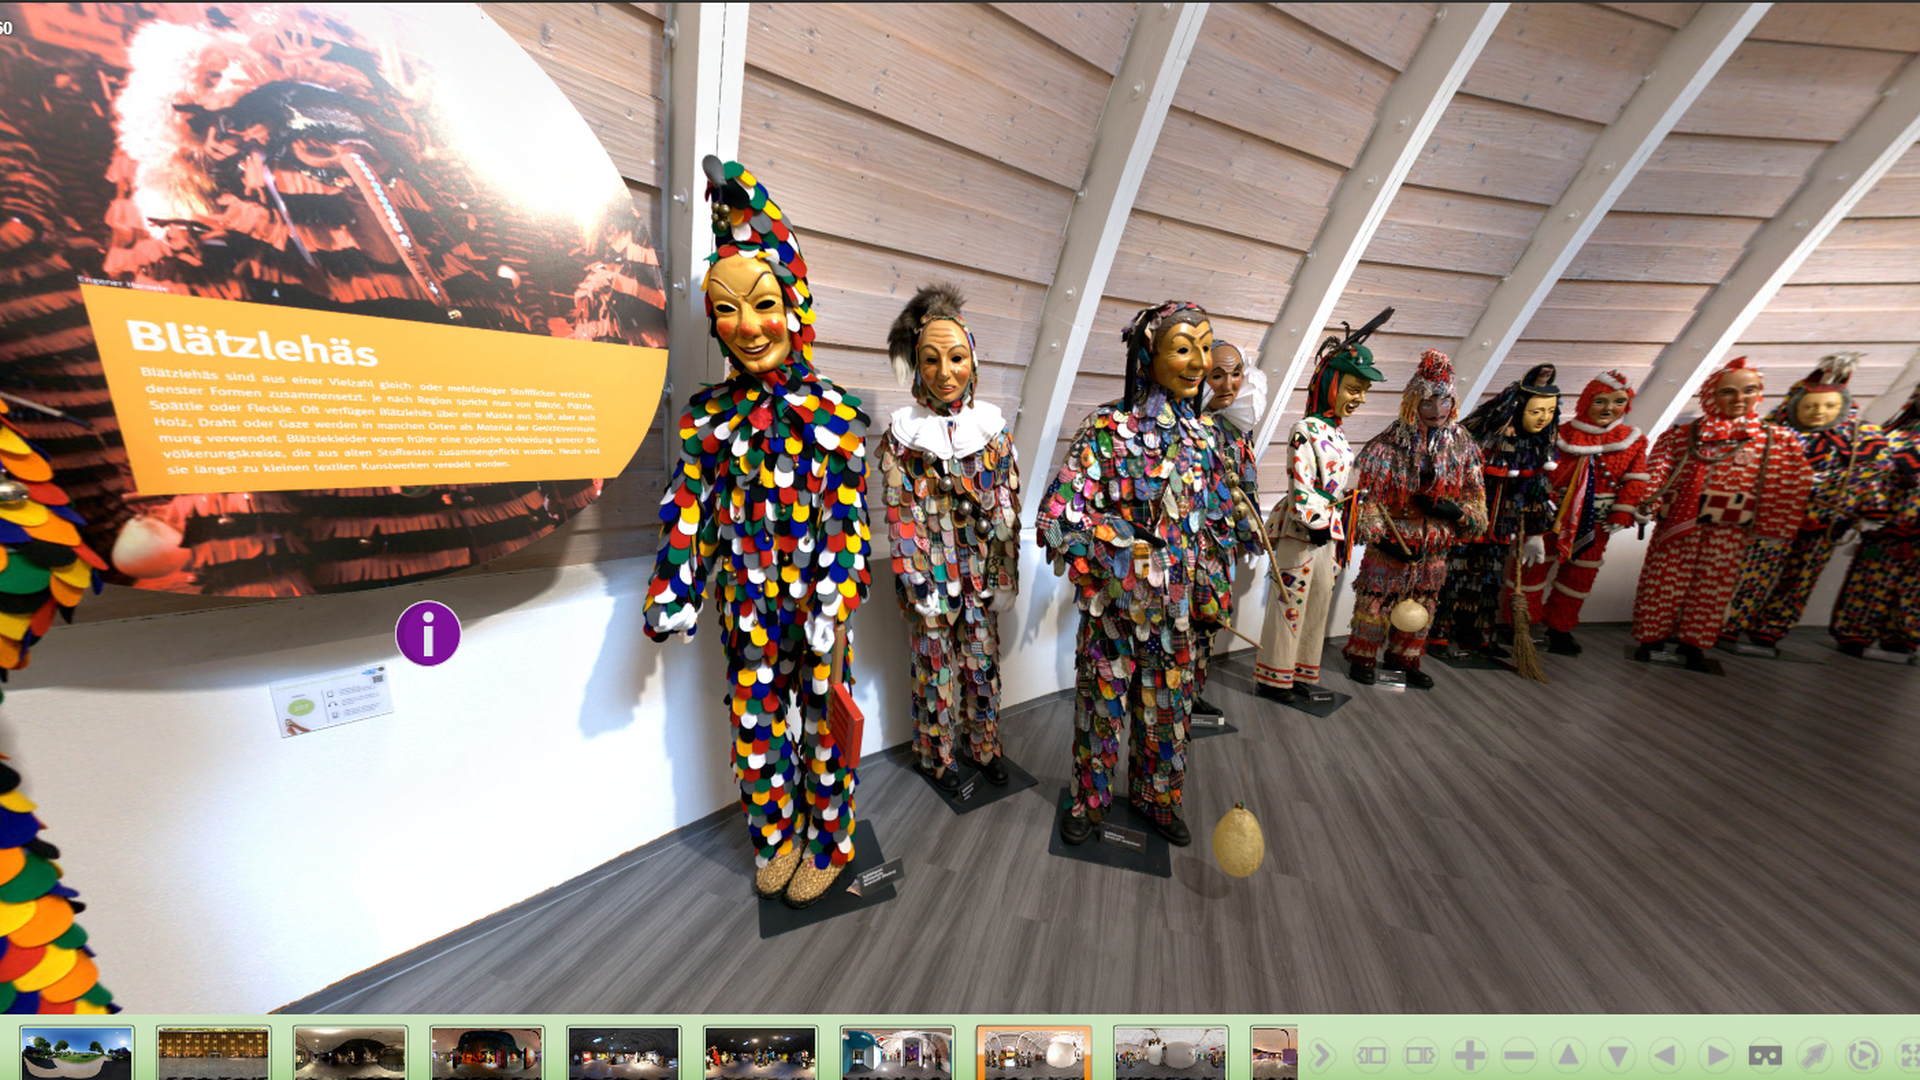 Virtueller Rundgang: Besucher der Seite können von zuhause aus durch das Fastnachtsmuseum Narrenschopf schlendern.